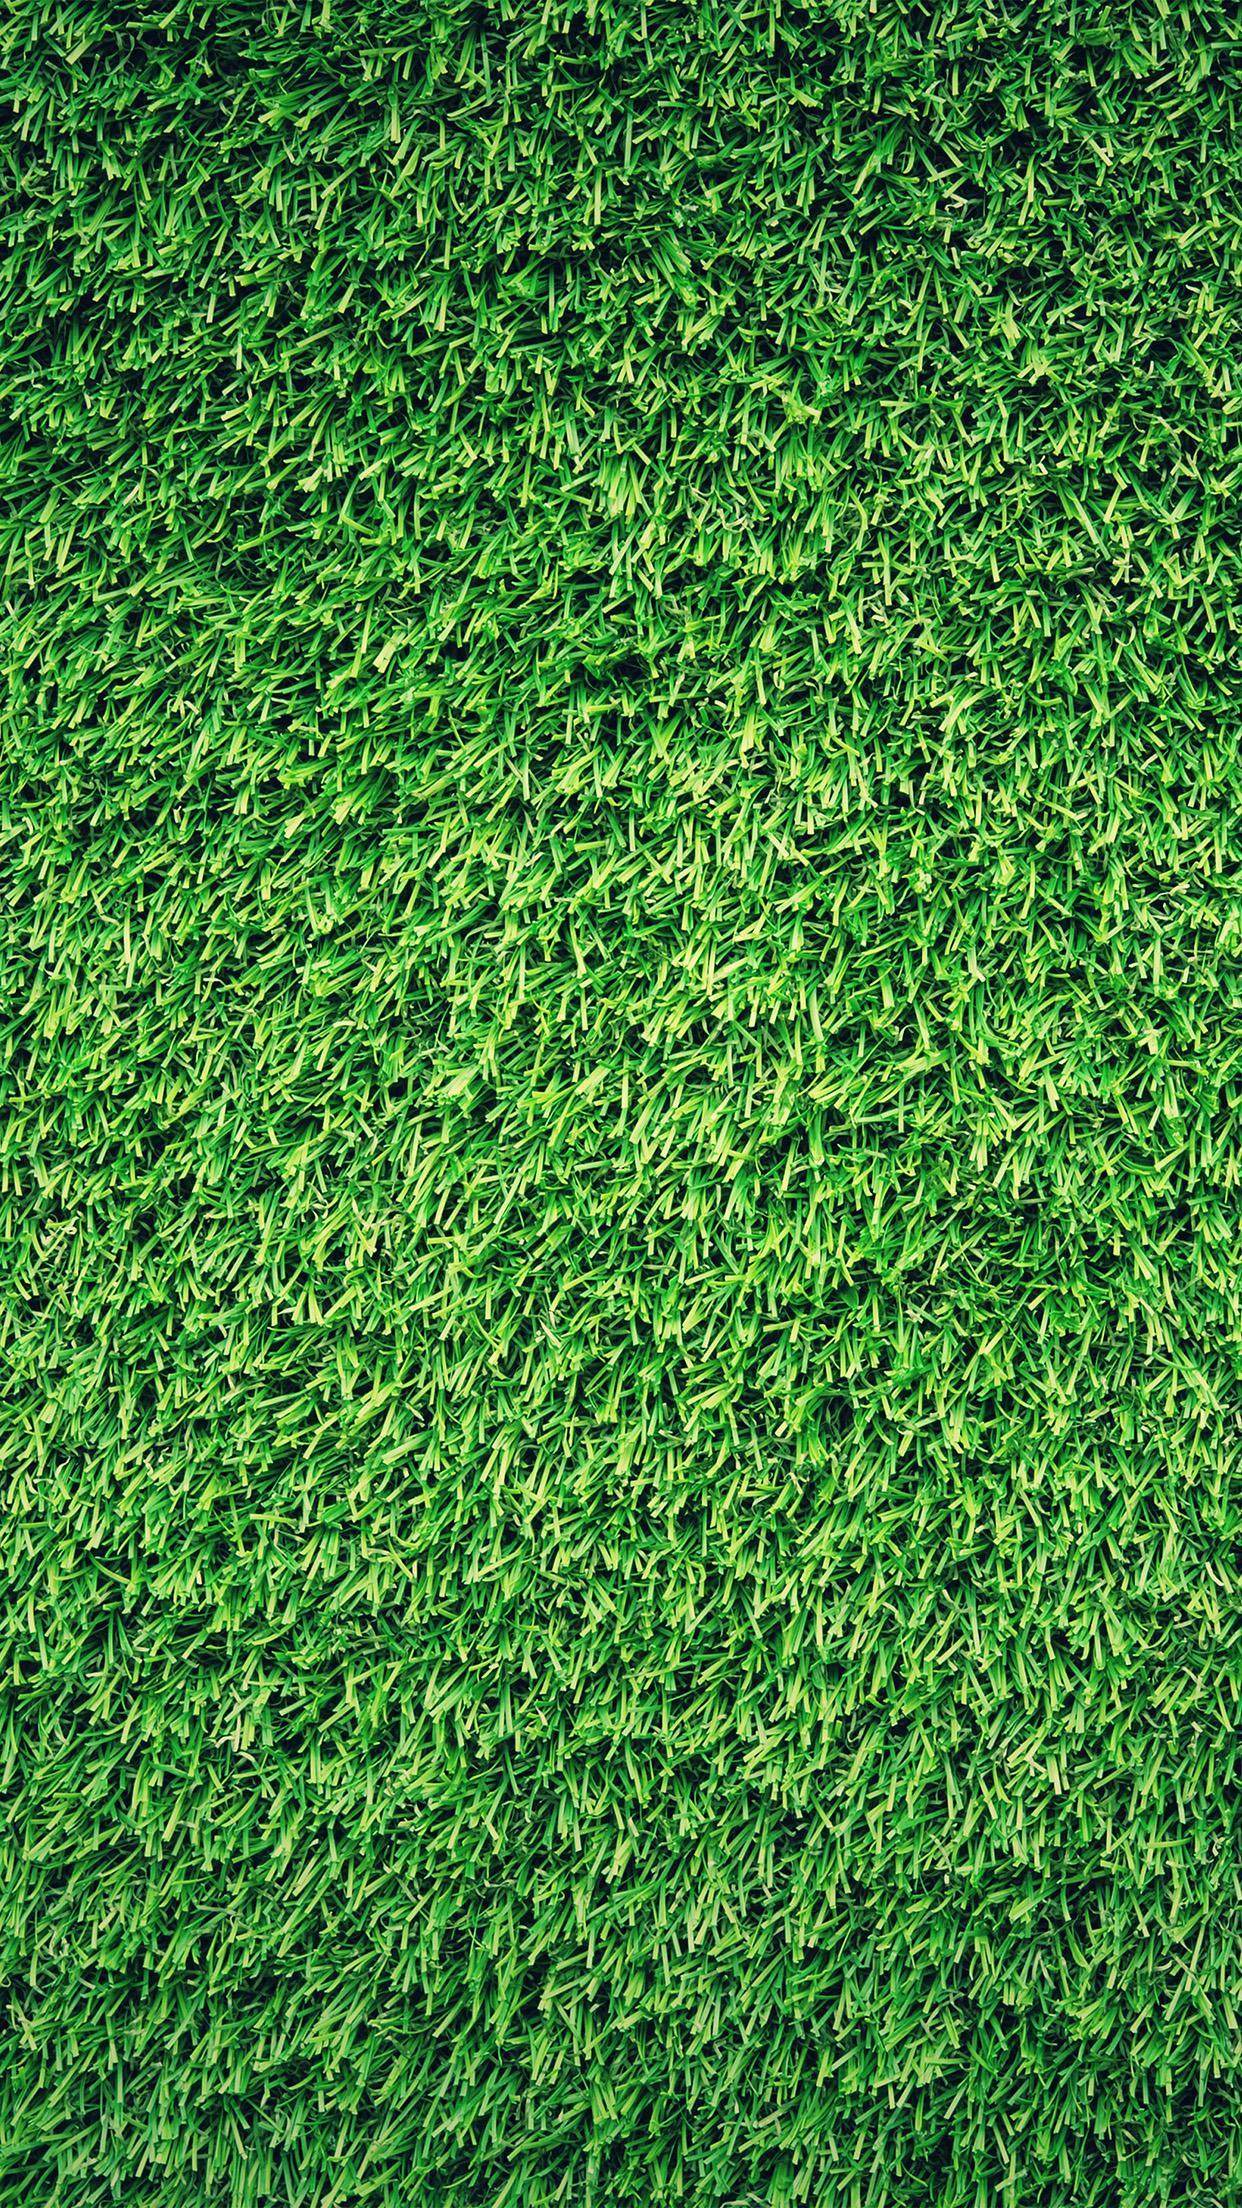 iPhone7 wallpaper. grass green pattern nature